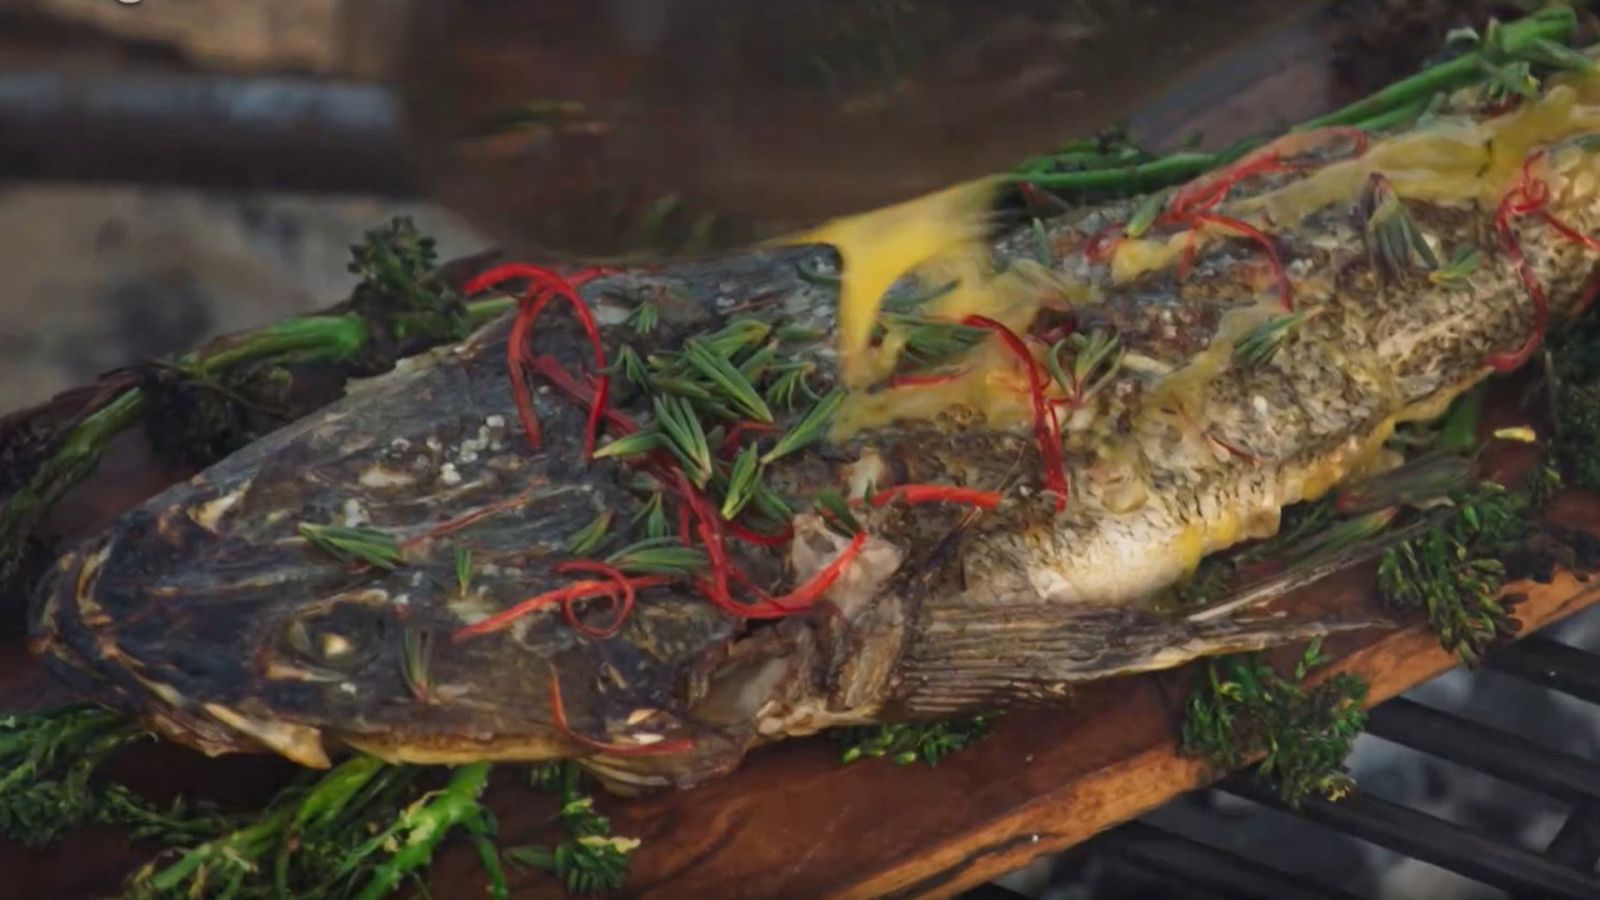 Expediciones culinarias. Alimentos del mar - Episodio 6: Pescado a la brasa - Documental en RTVE